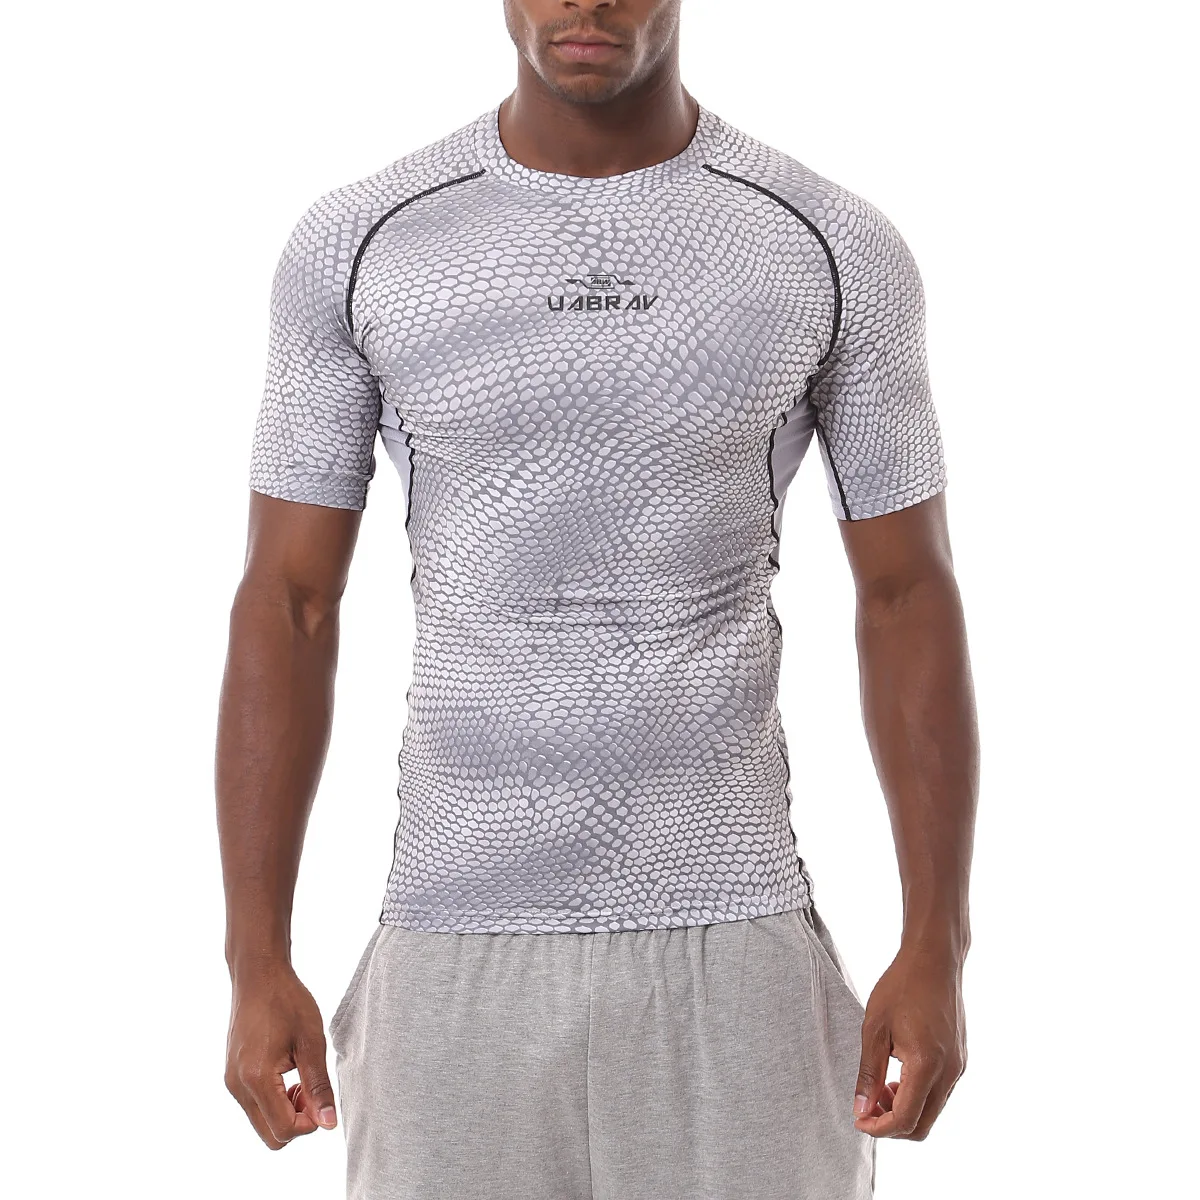 Спортивная футболка для фитнеса Бодибилдинг бег мужские легинсы для бега Спортивная Футболка компрессионная футболка с короткими рукавами быстросохнущие футболки топы